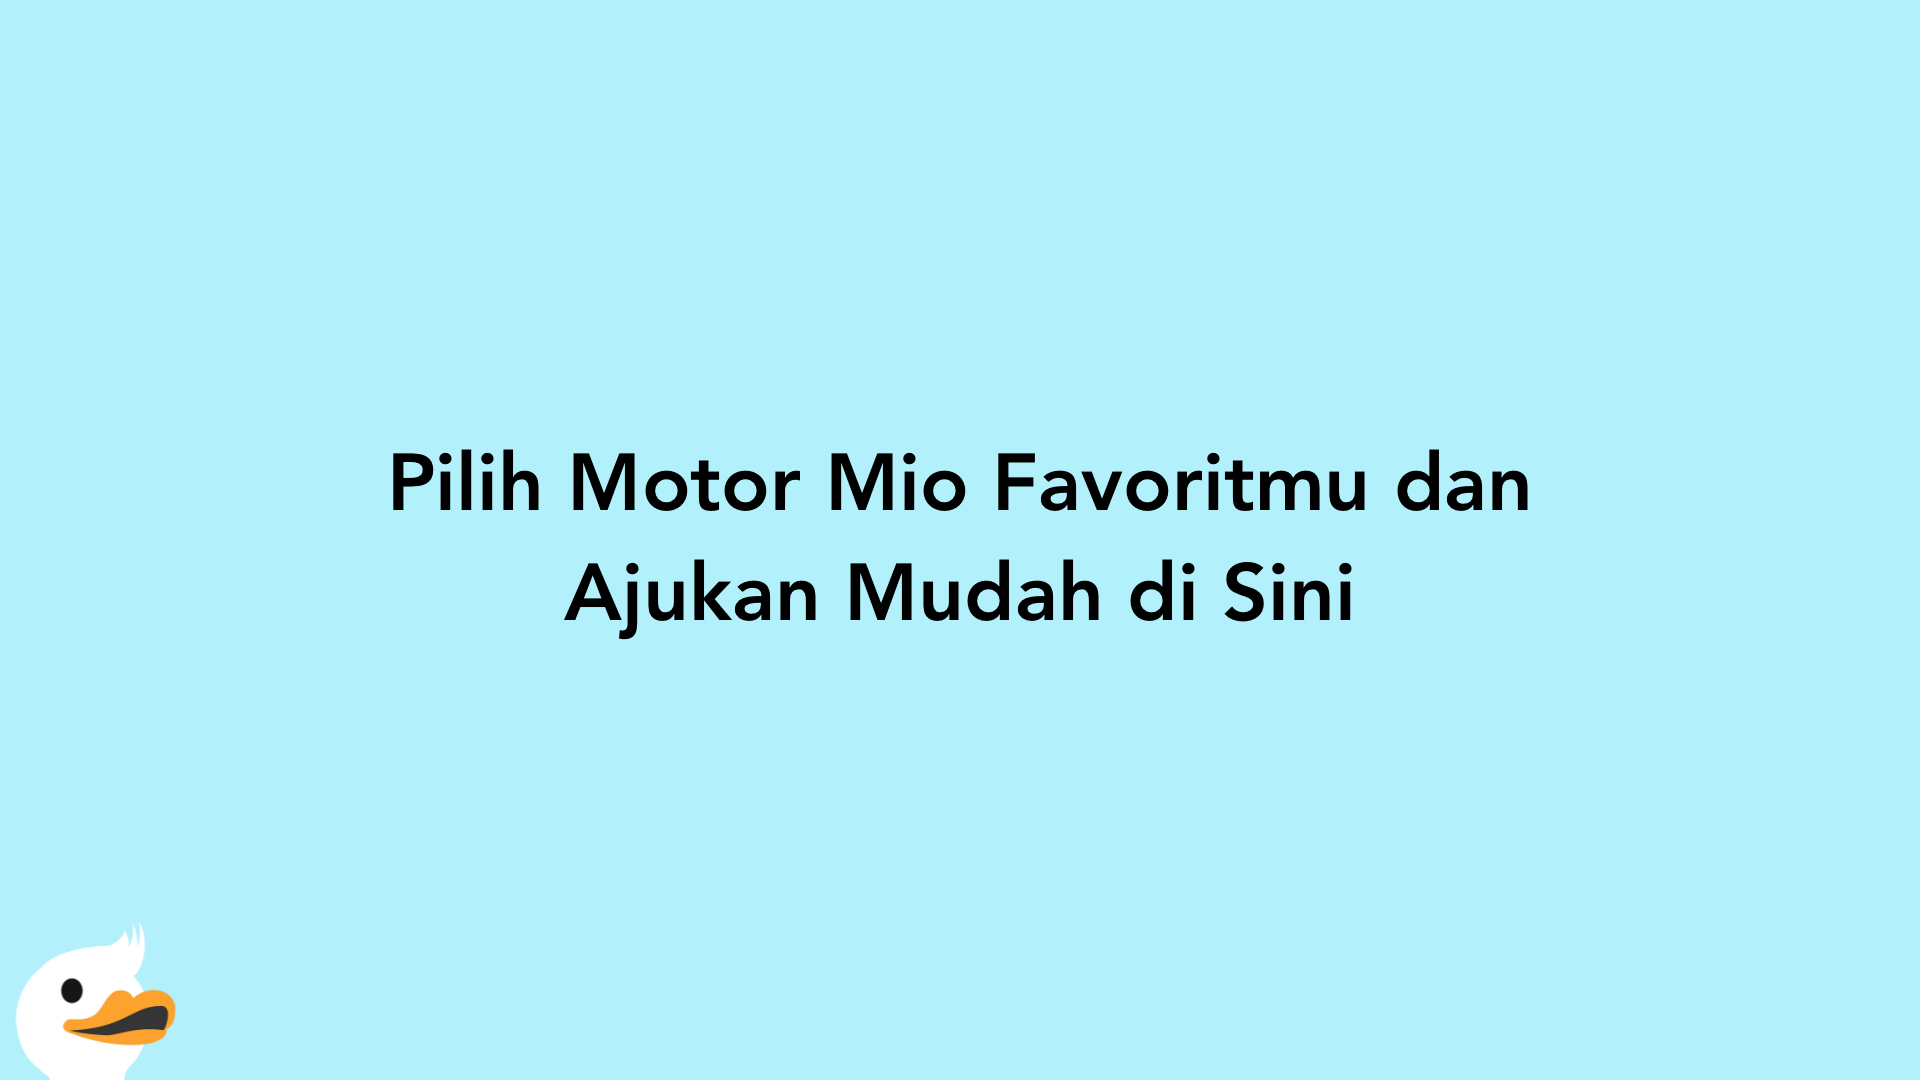 Pilih Motor Mio Favoritmu dan Ajukan Mudah di Sini